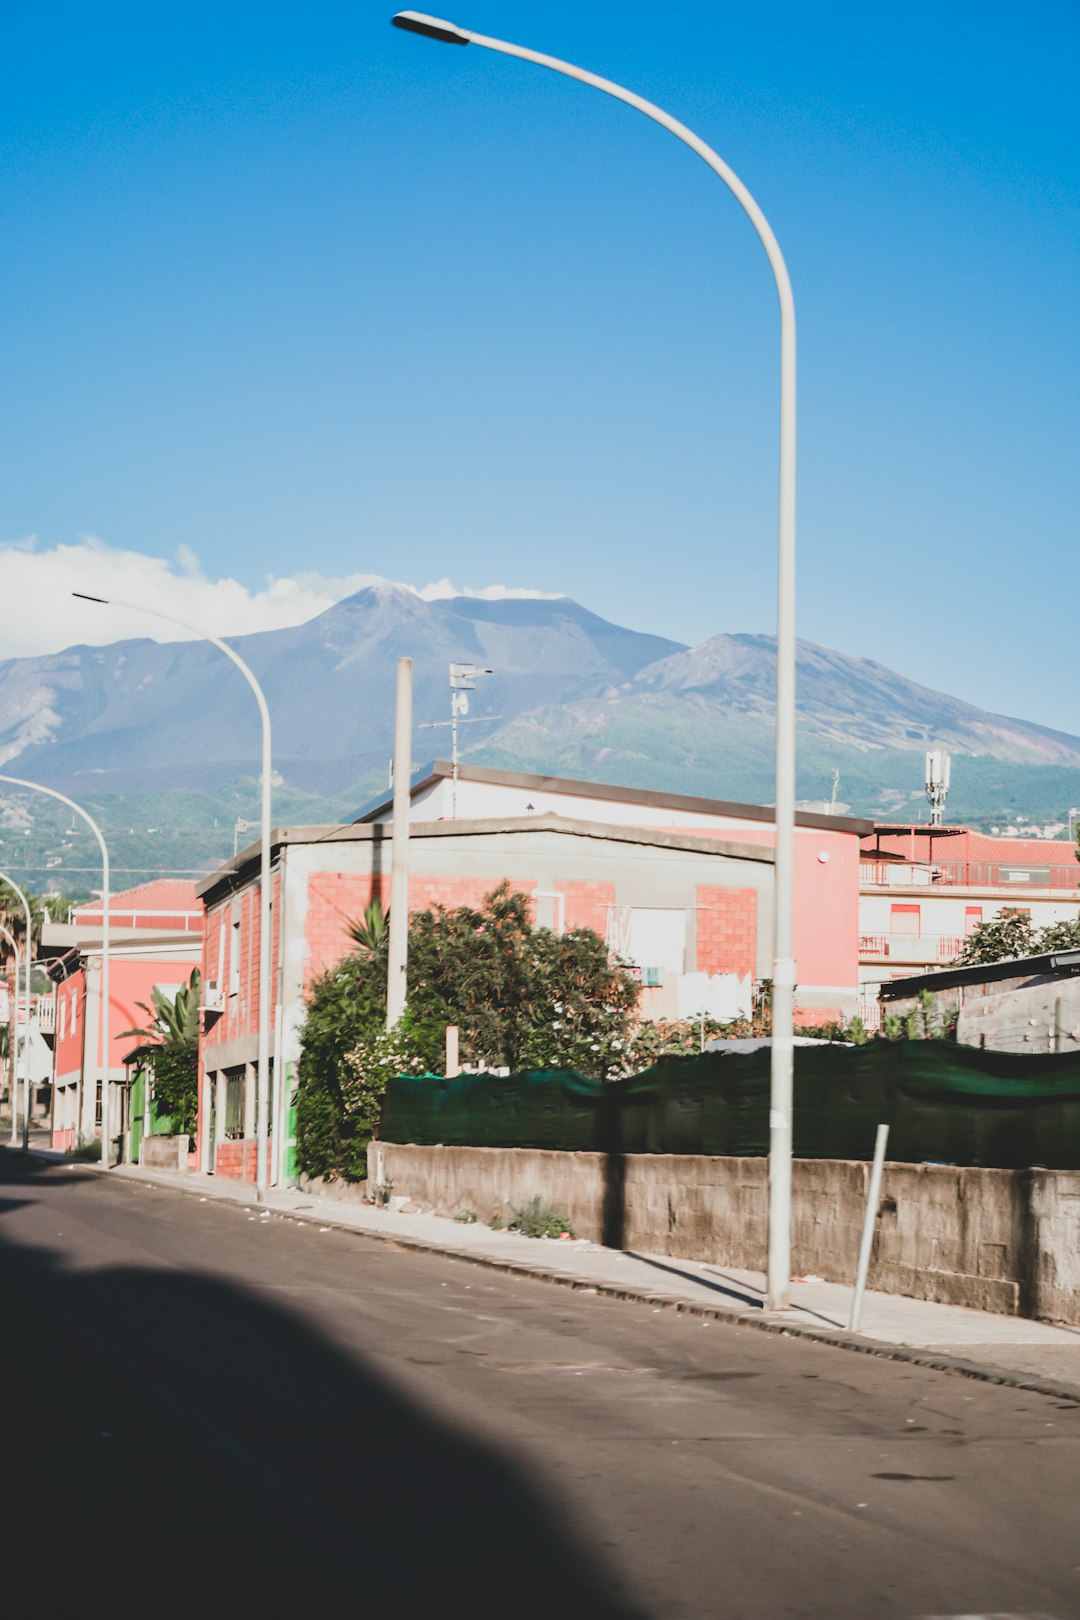 Town photo spot Mount Etna Taormina